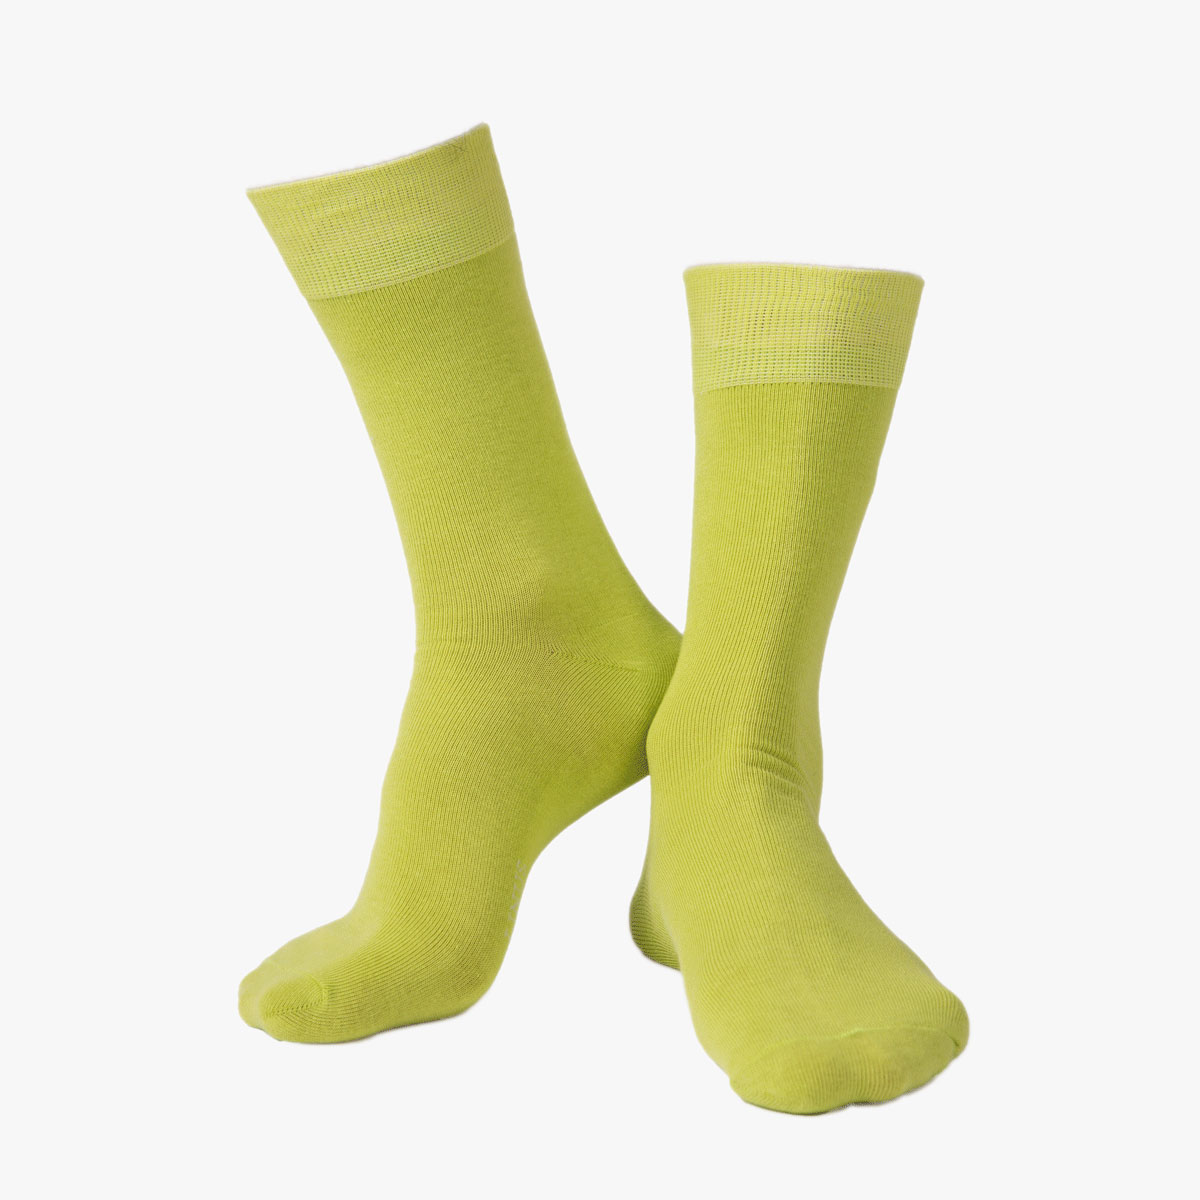 Socken in uni gelb